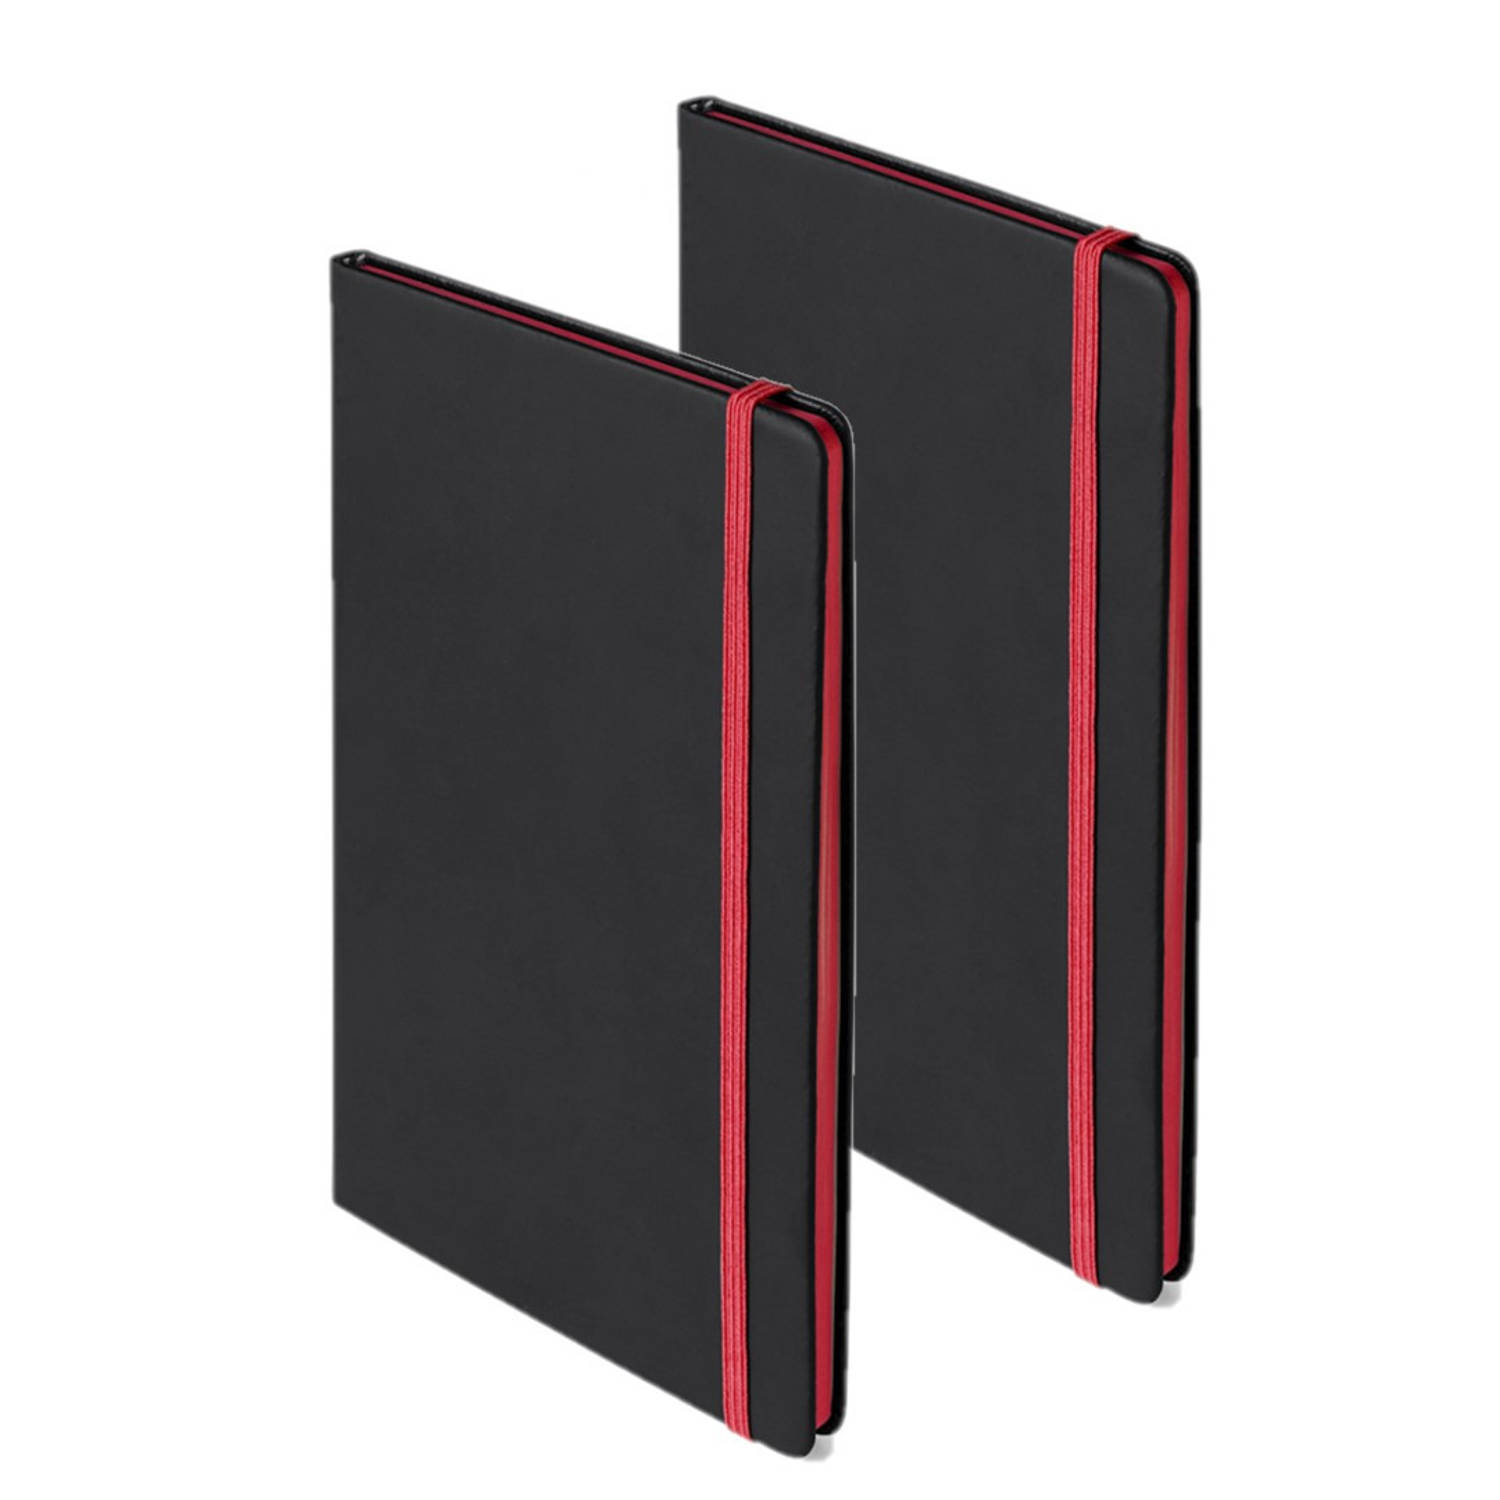 Set van 2x stuks notitieboekje met rood elastiek A5 formaat - Notitieboek